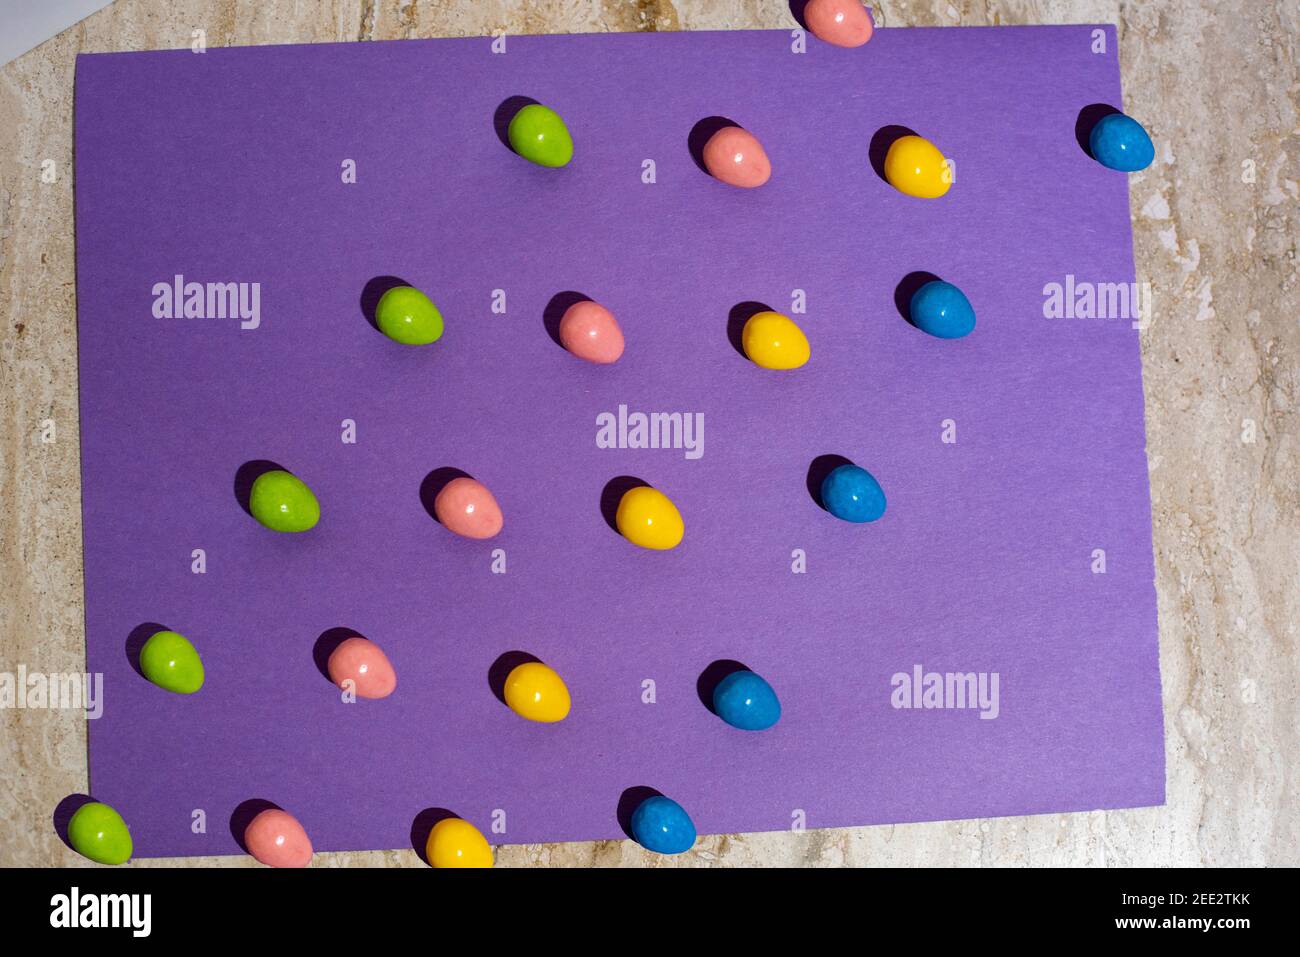 Les bonbons sont disposés sur du papier coloré créant des motifs répétitifs. Série. Banque D'Images